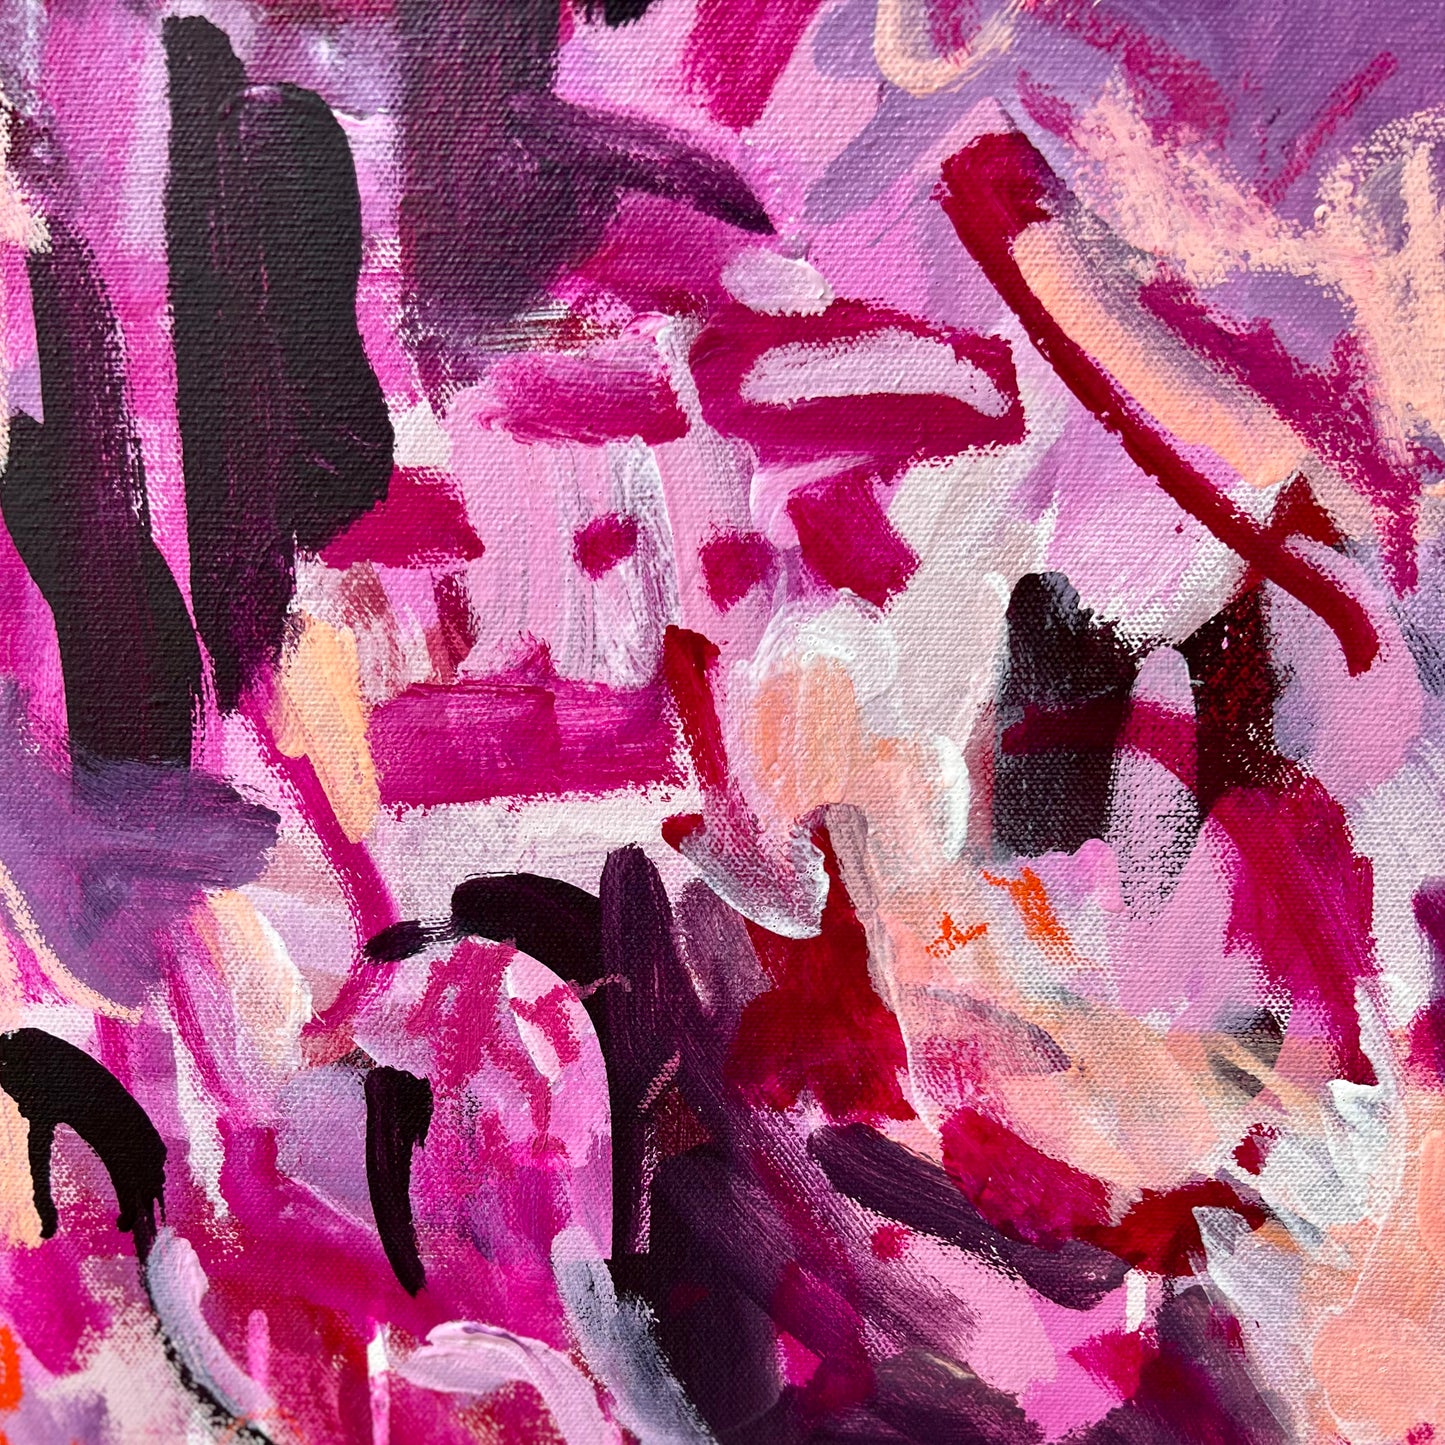 Australian abstract artist | pink peach painting | modern art | Perth artist